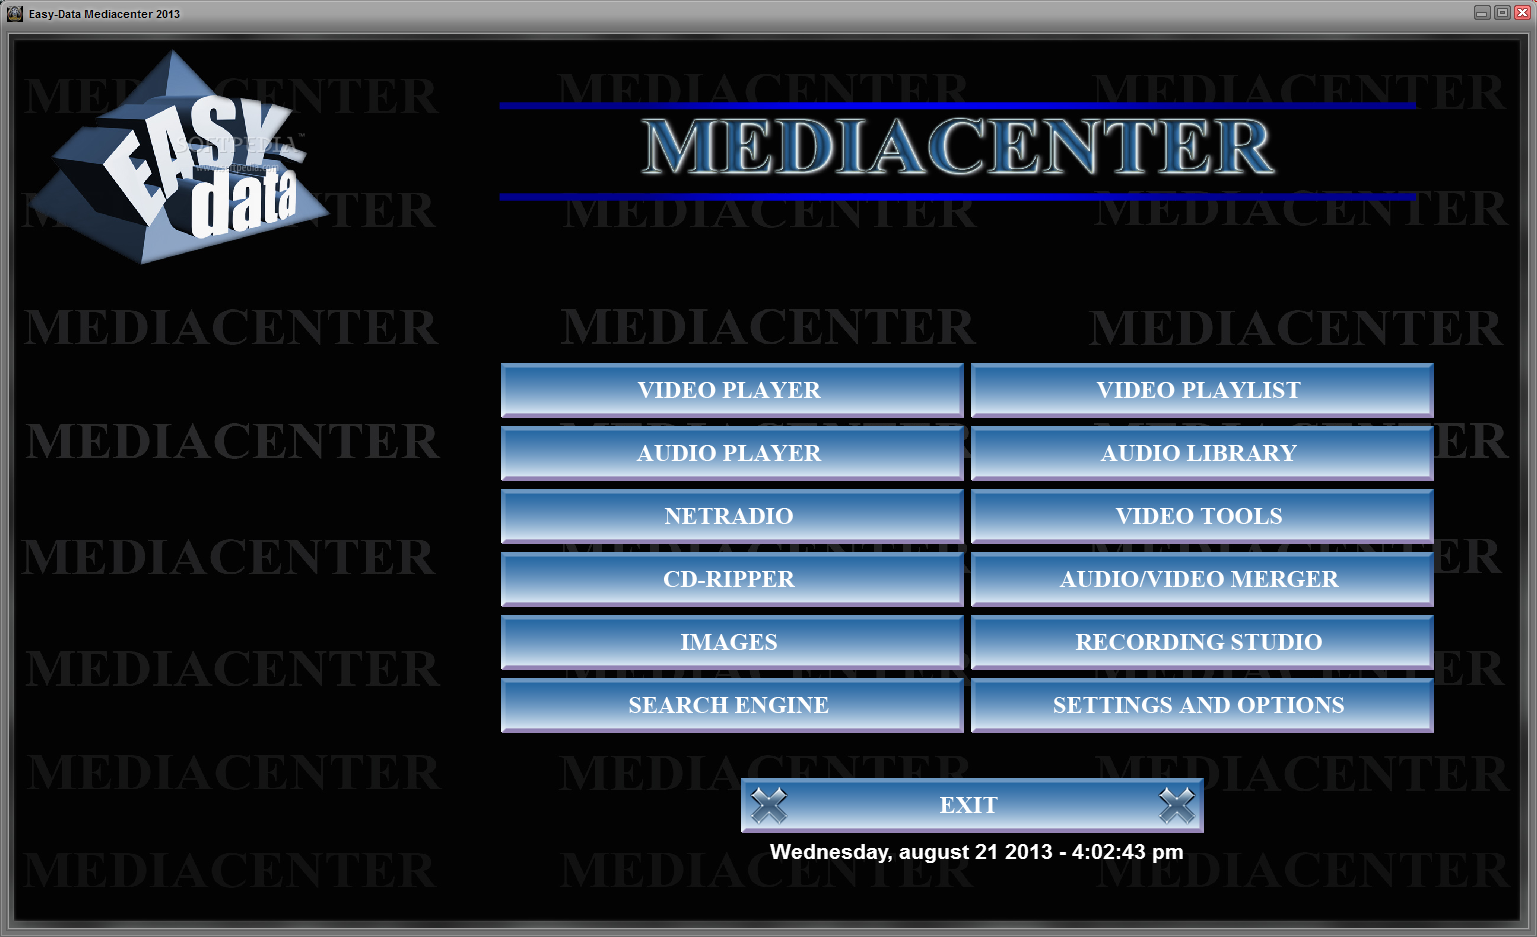 Top 43 Multimedia Apps Like Easy-Data Mediacenter 2013 (formerly Easy-Data Mediaplayer) - Best Alternatives